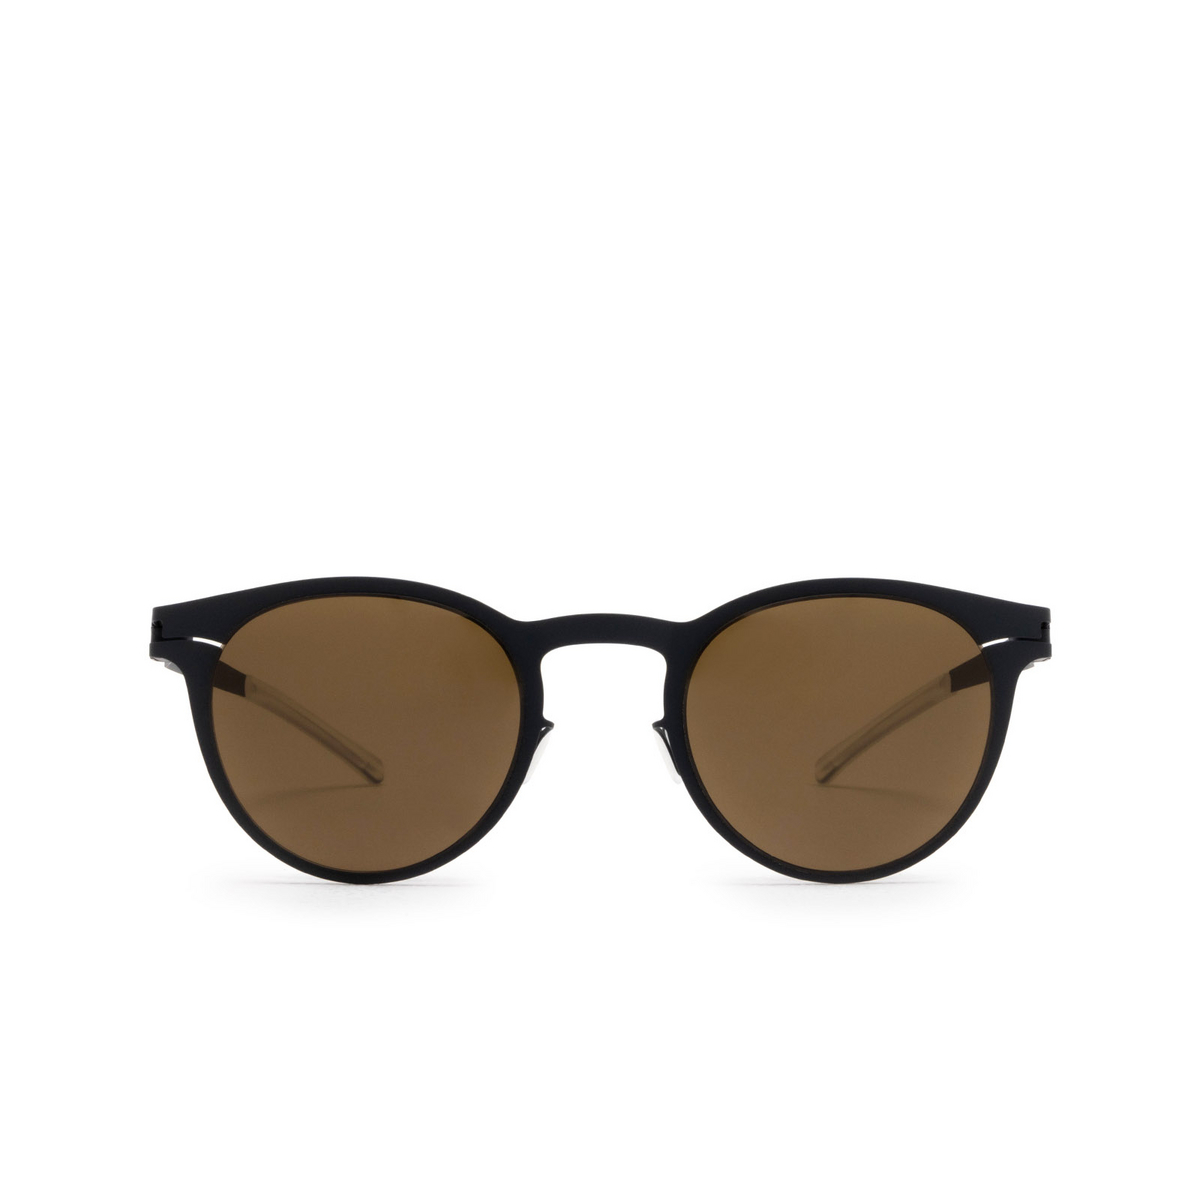 Mykita® Square Sunglasses: Riley color 255 Indigo - front view